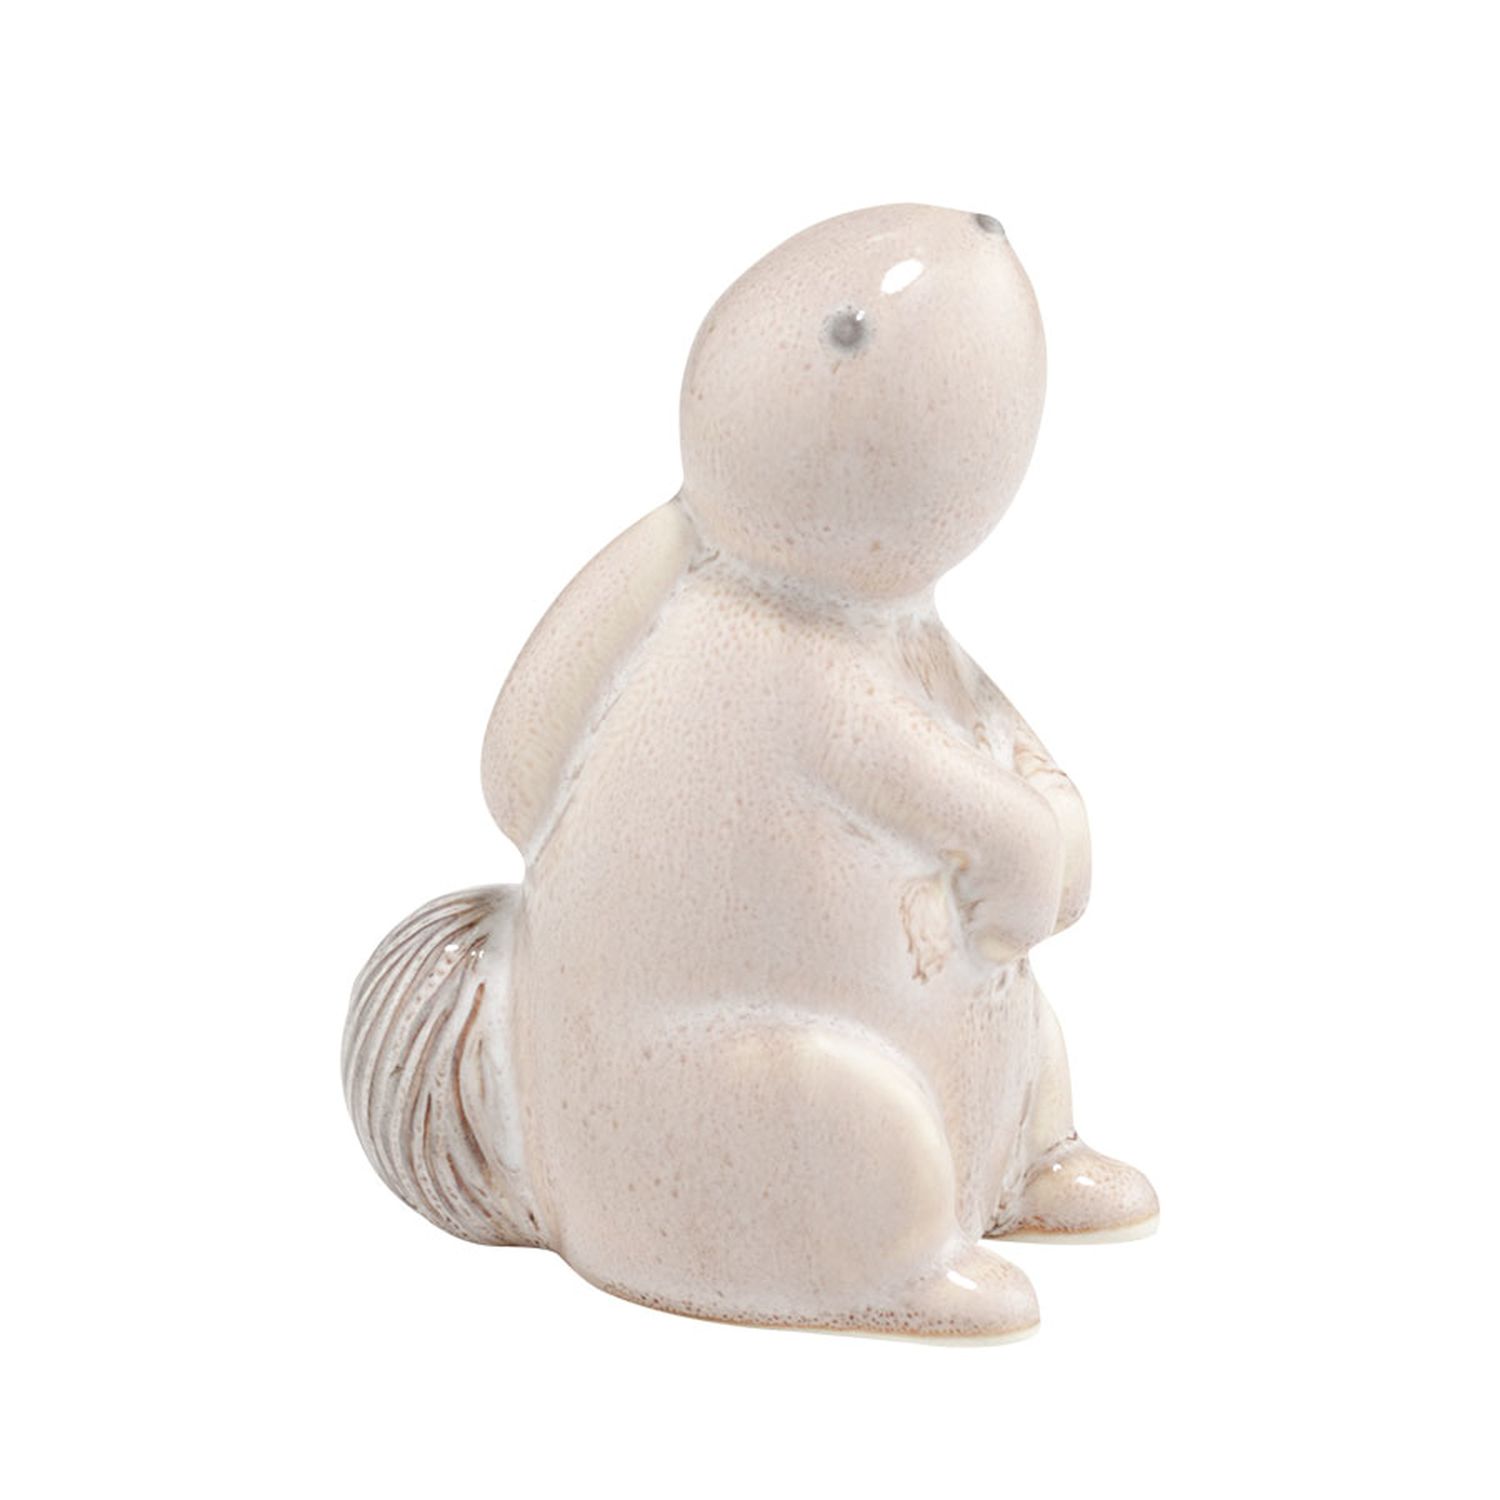 Department 56 Garden District Baby Bunny Figurine